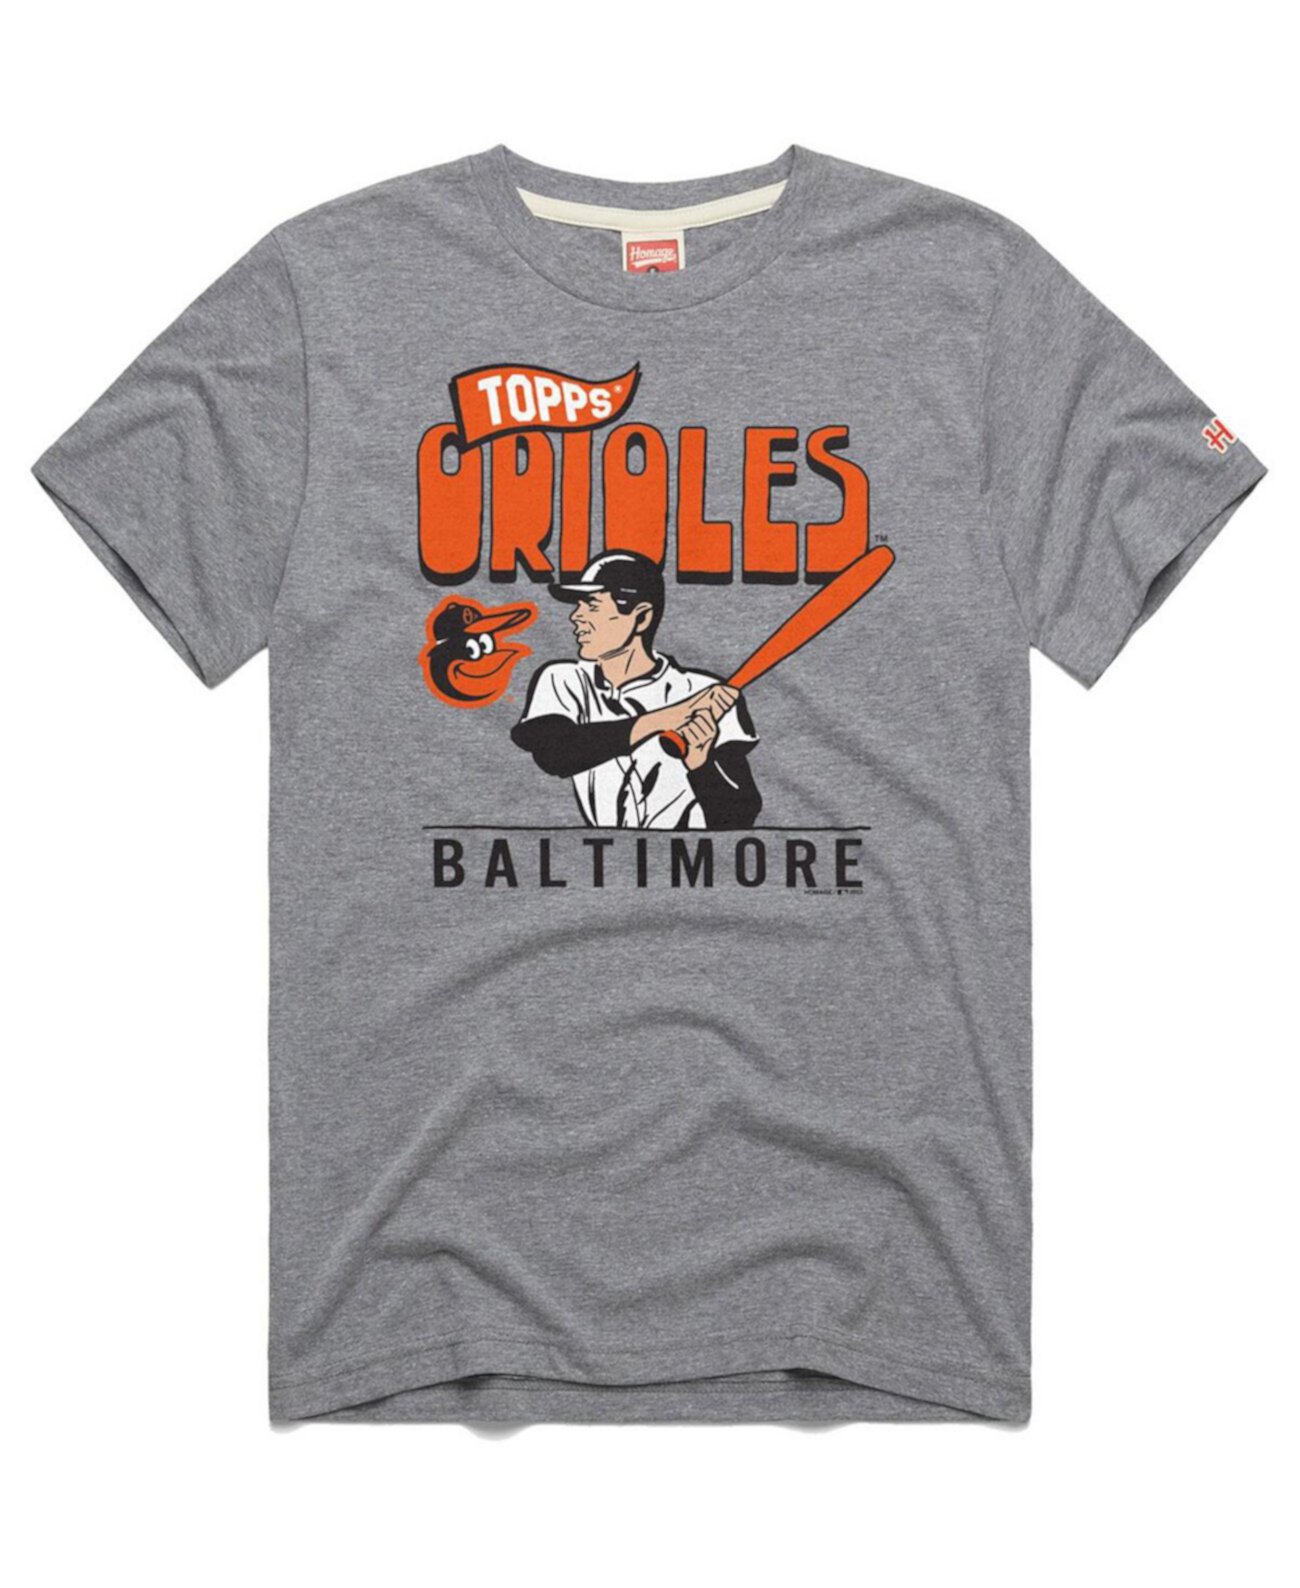 Мужская серая футболка Baltimore Orioles Tri-Blend x Topps Homage